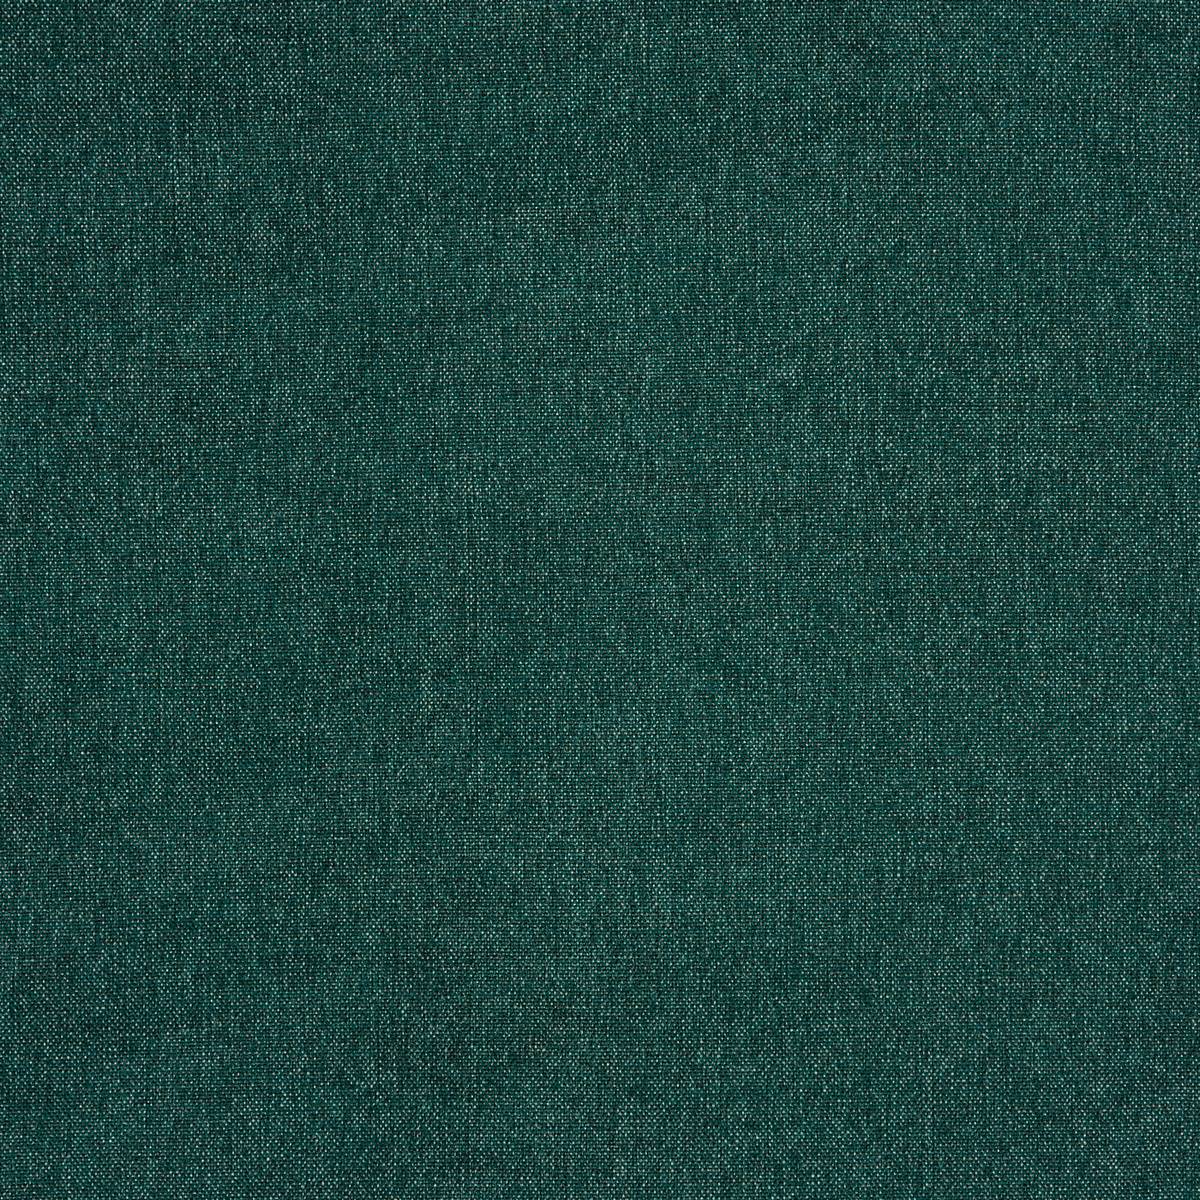 Chino Emerald Fabric by Prestigious Textiles